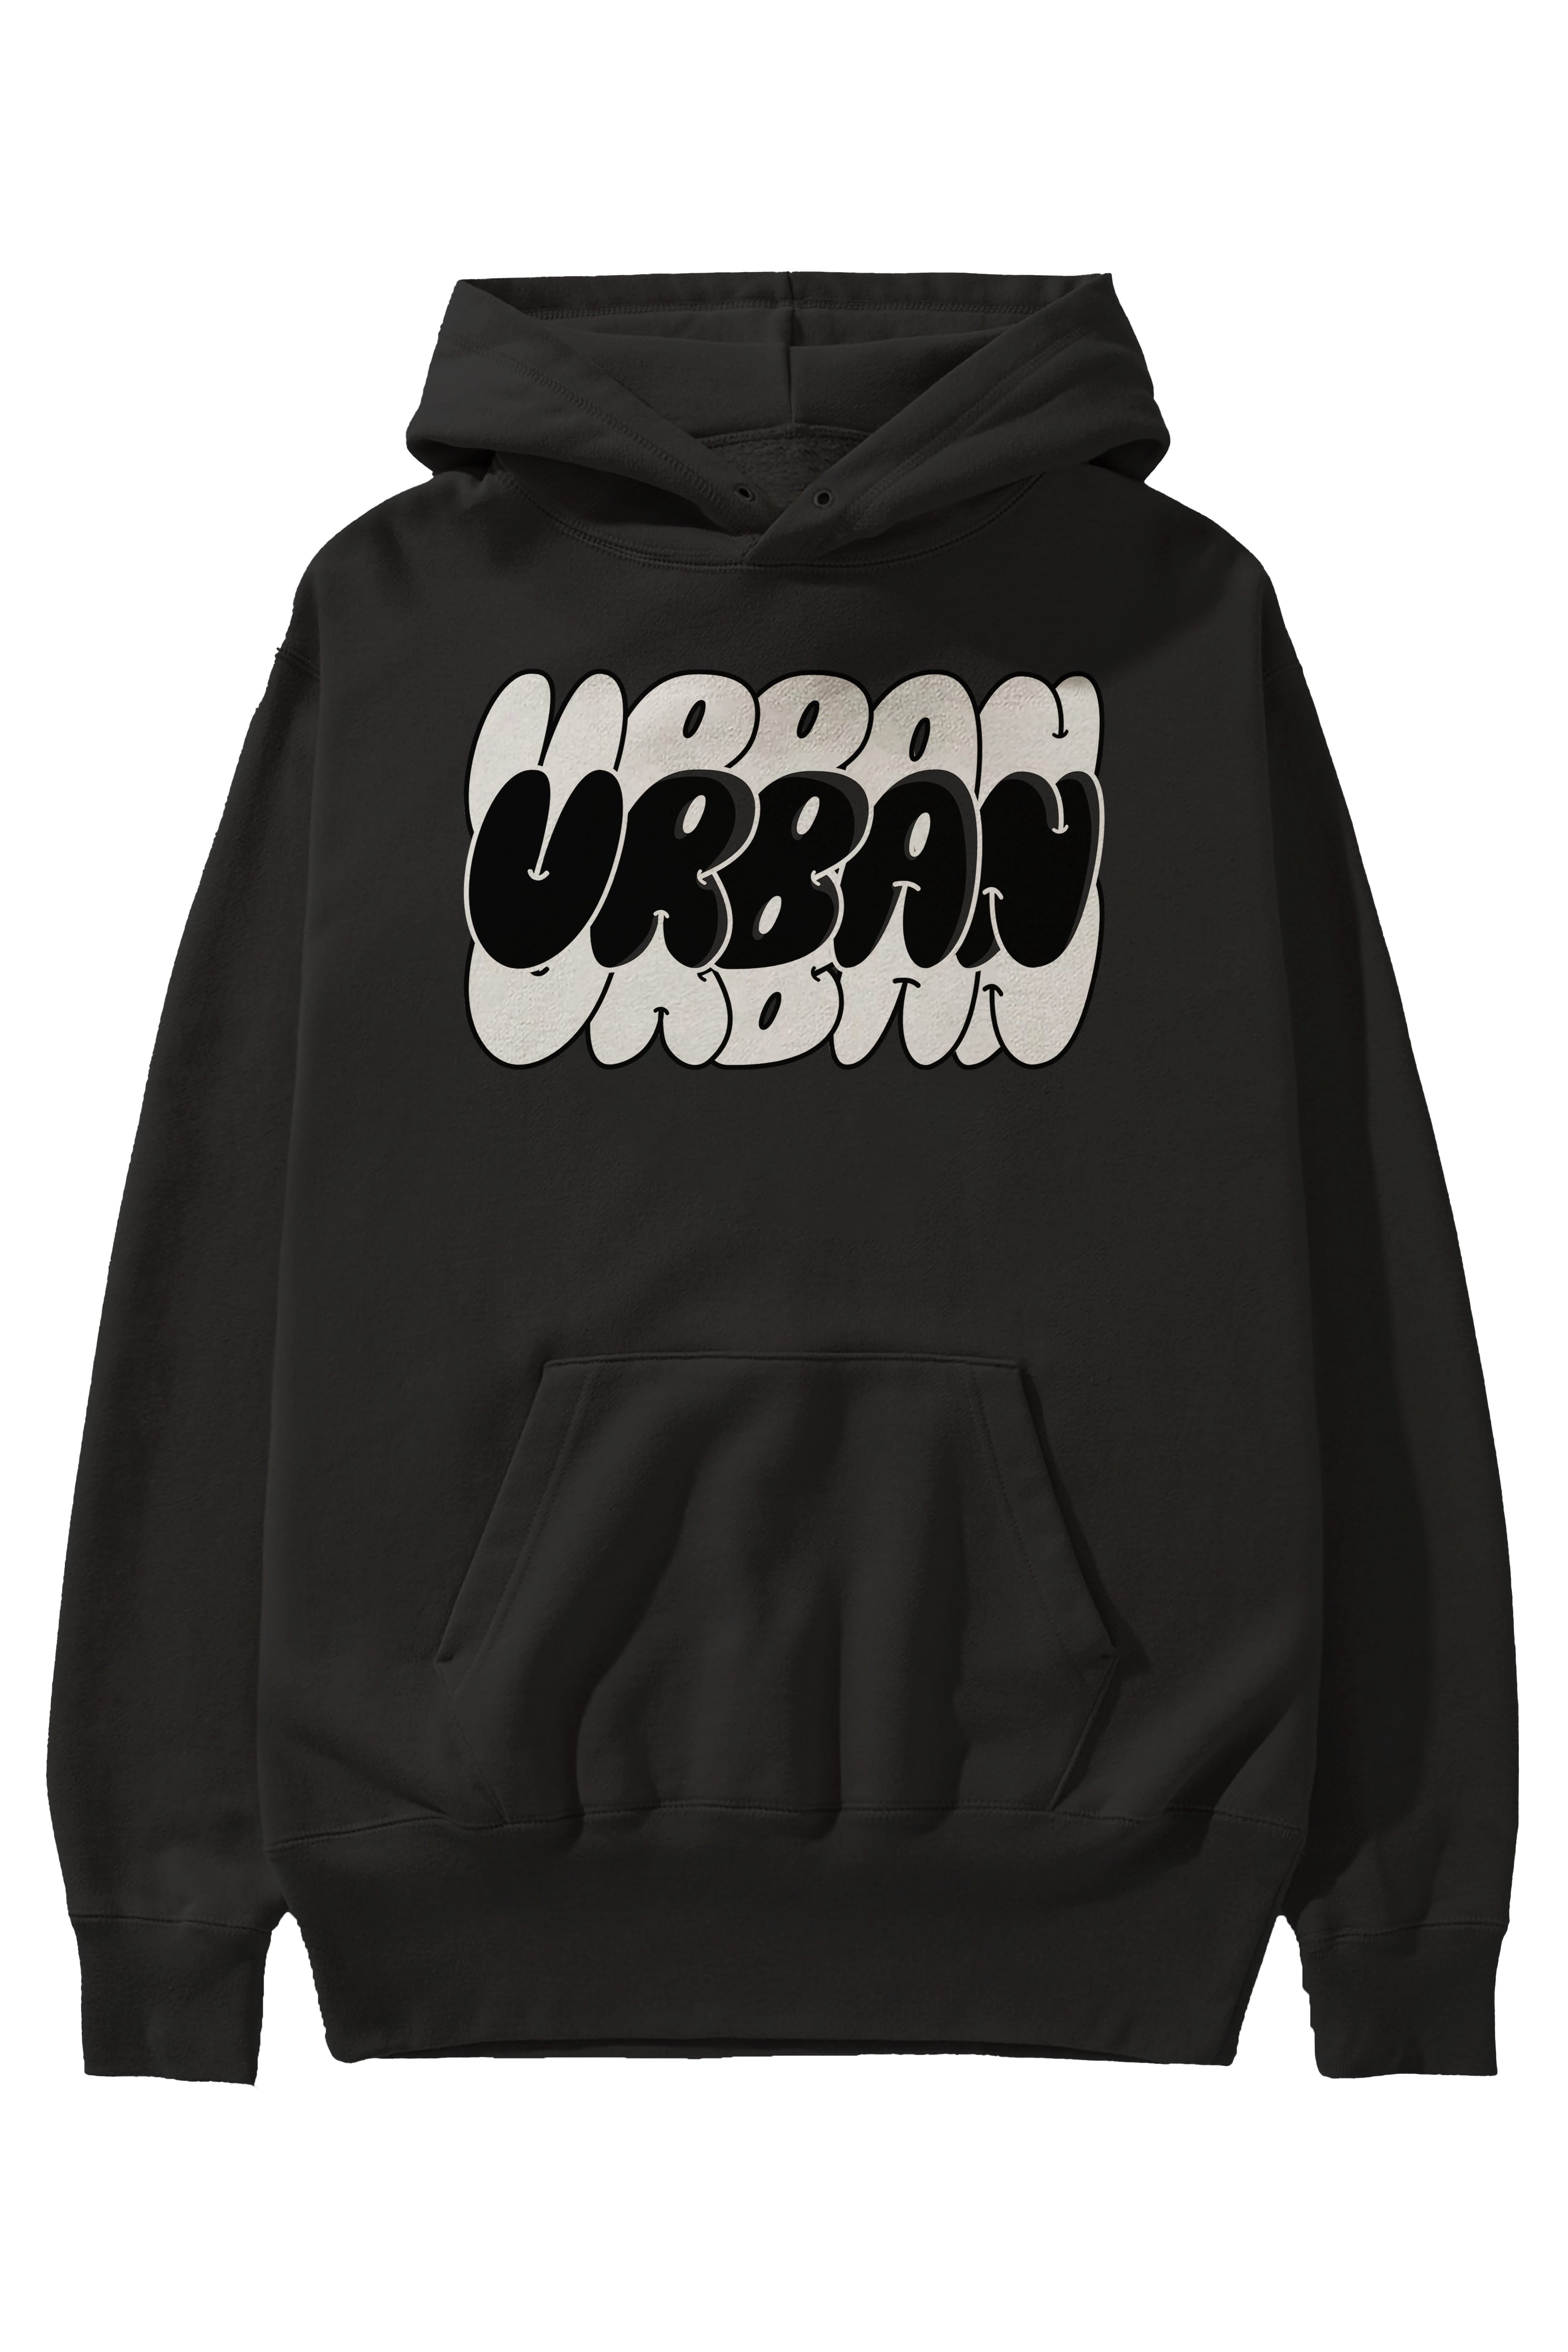 Urban Yazılı Ön Baskılı Oversize Hoodie Kapüşonlu Sweatshirt Erkek Kadın Unisex